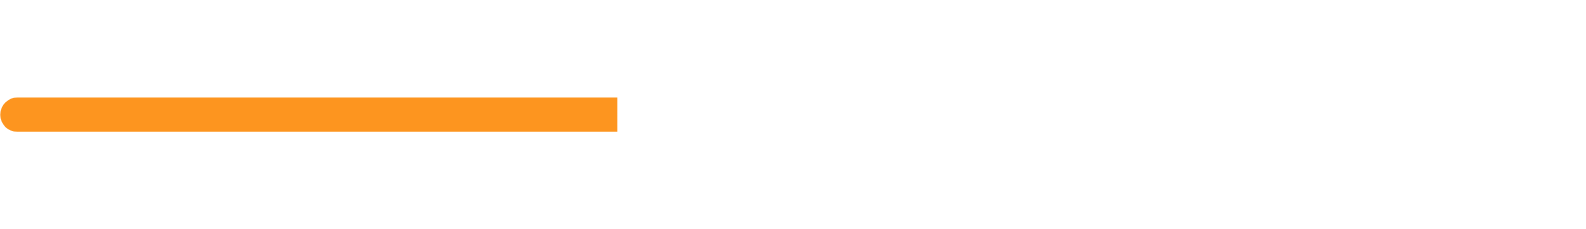 EnBW Energie logo large for dark backgrounds (transparent PNG)